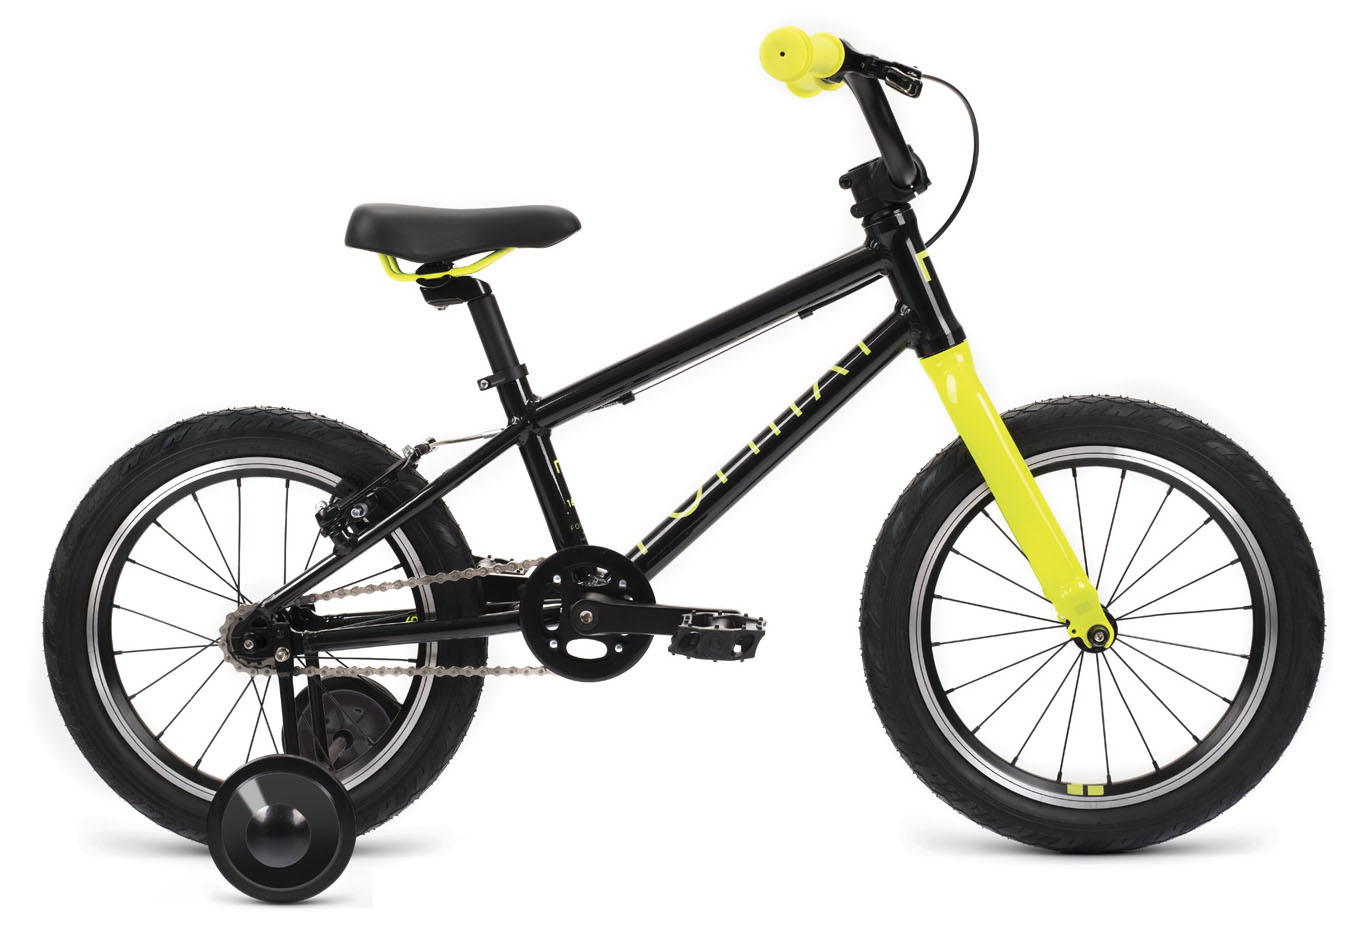  Отзывы о Детском велосипеде Format Kids 16 LE 2022